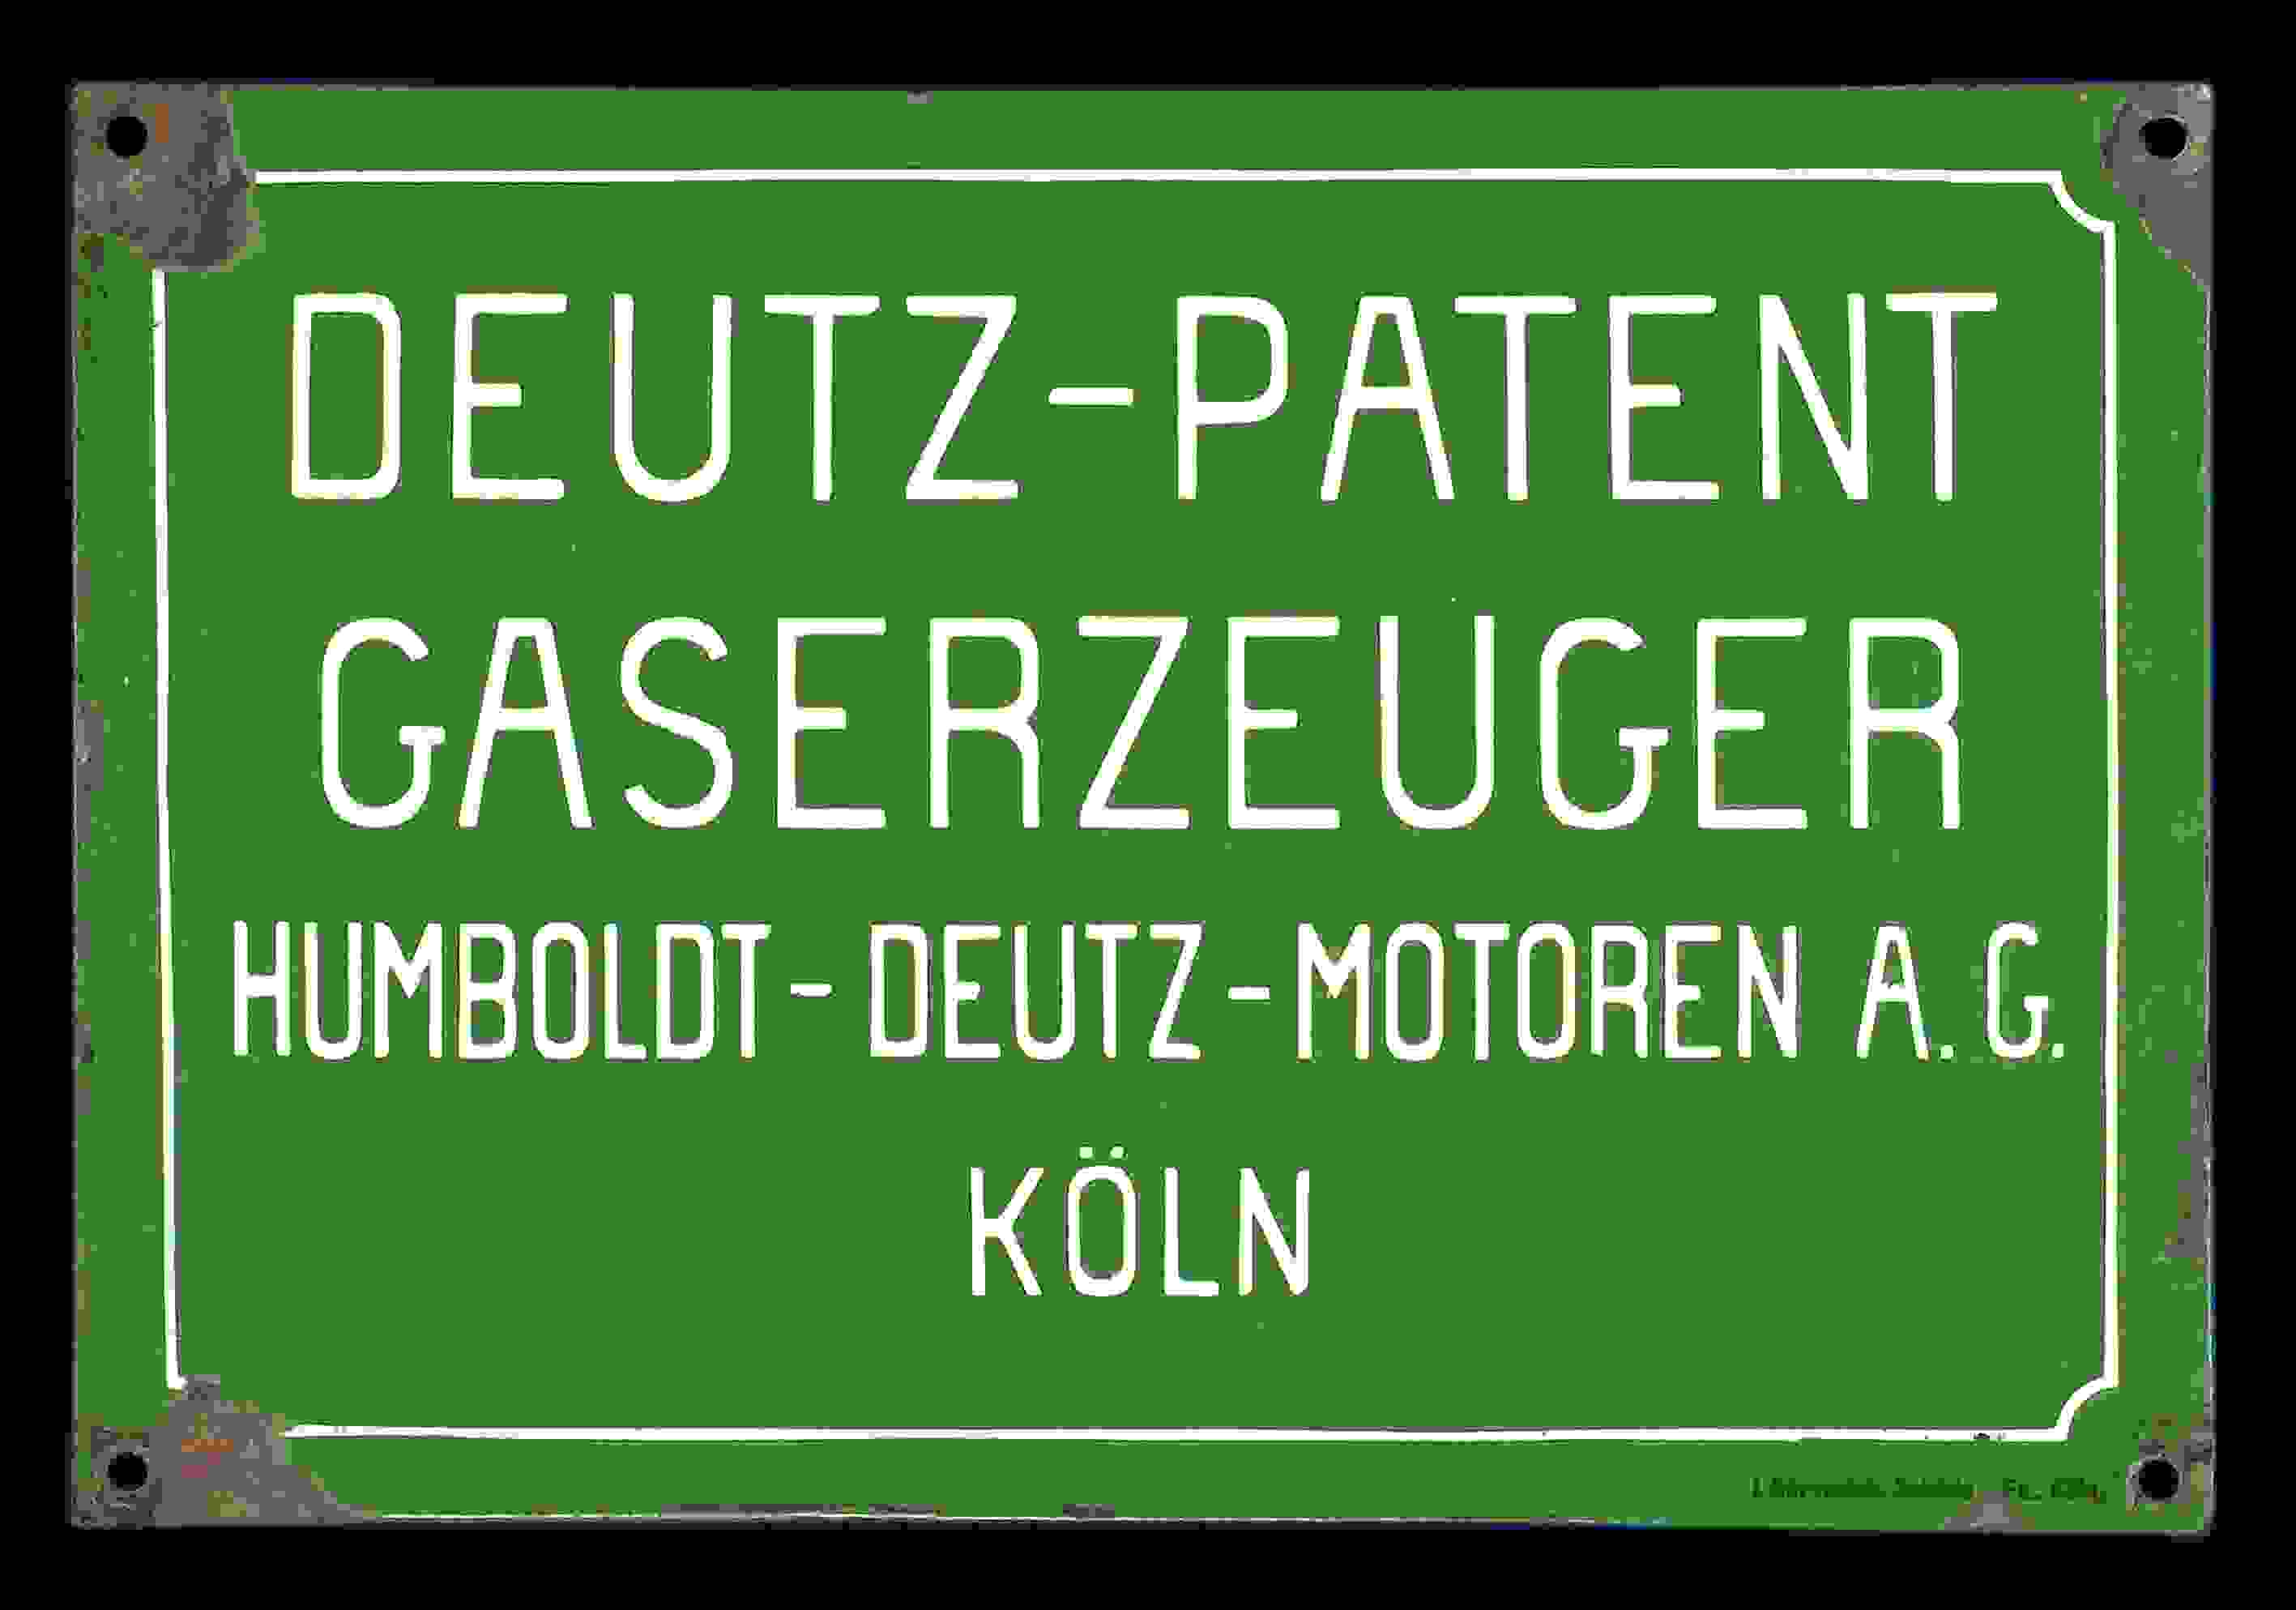 Deutz-Patent Gaserzeuger 